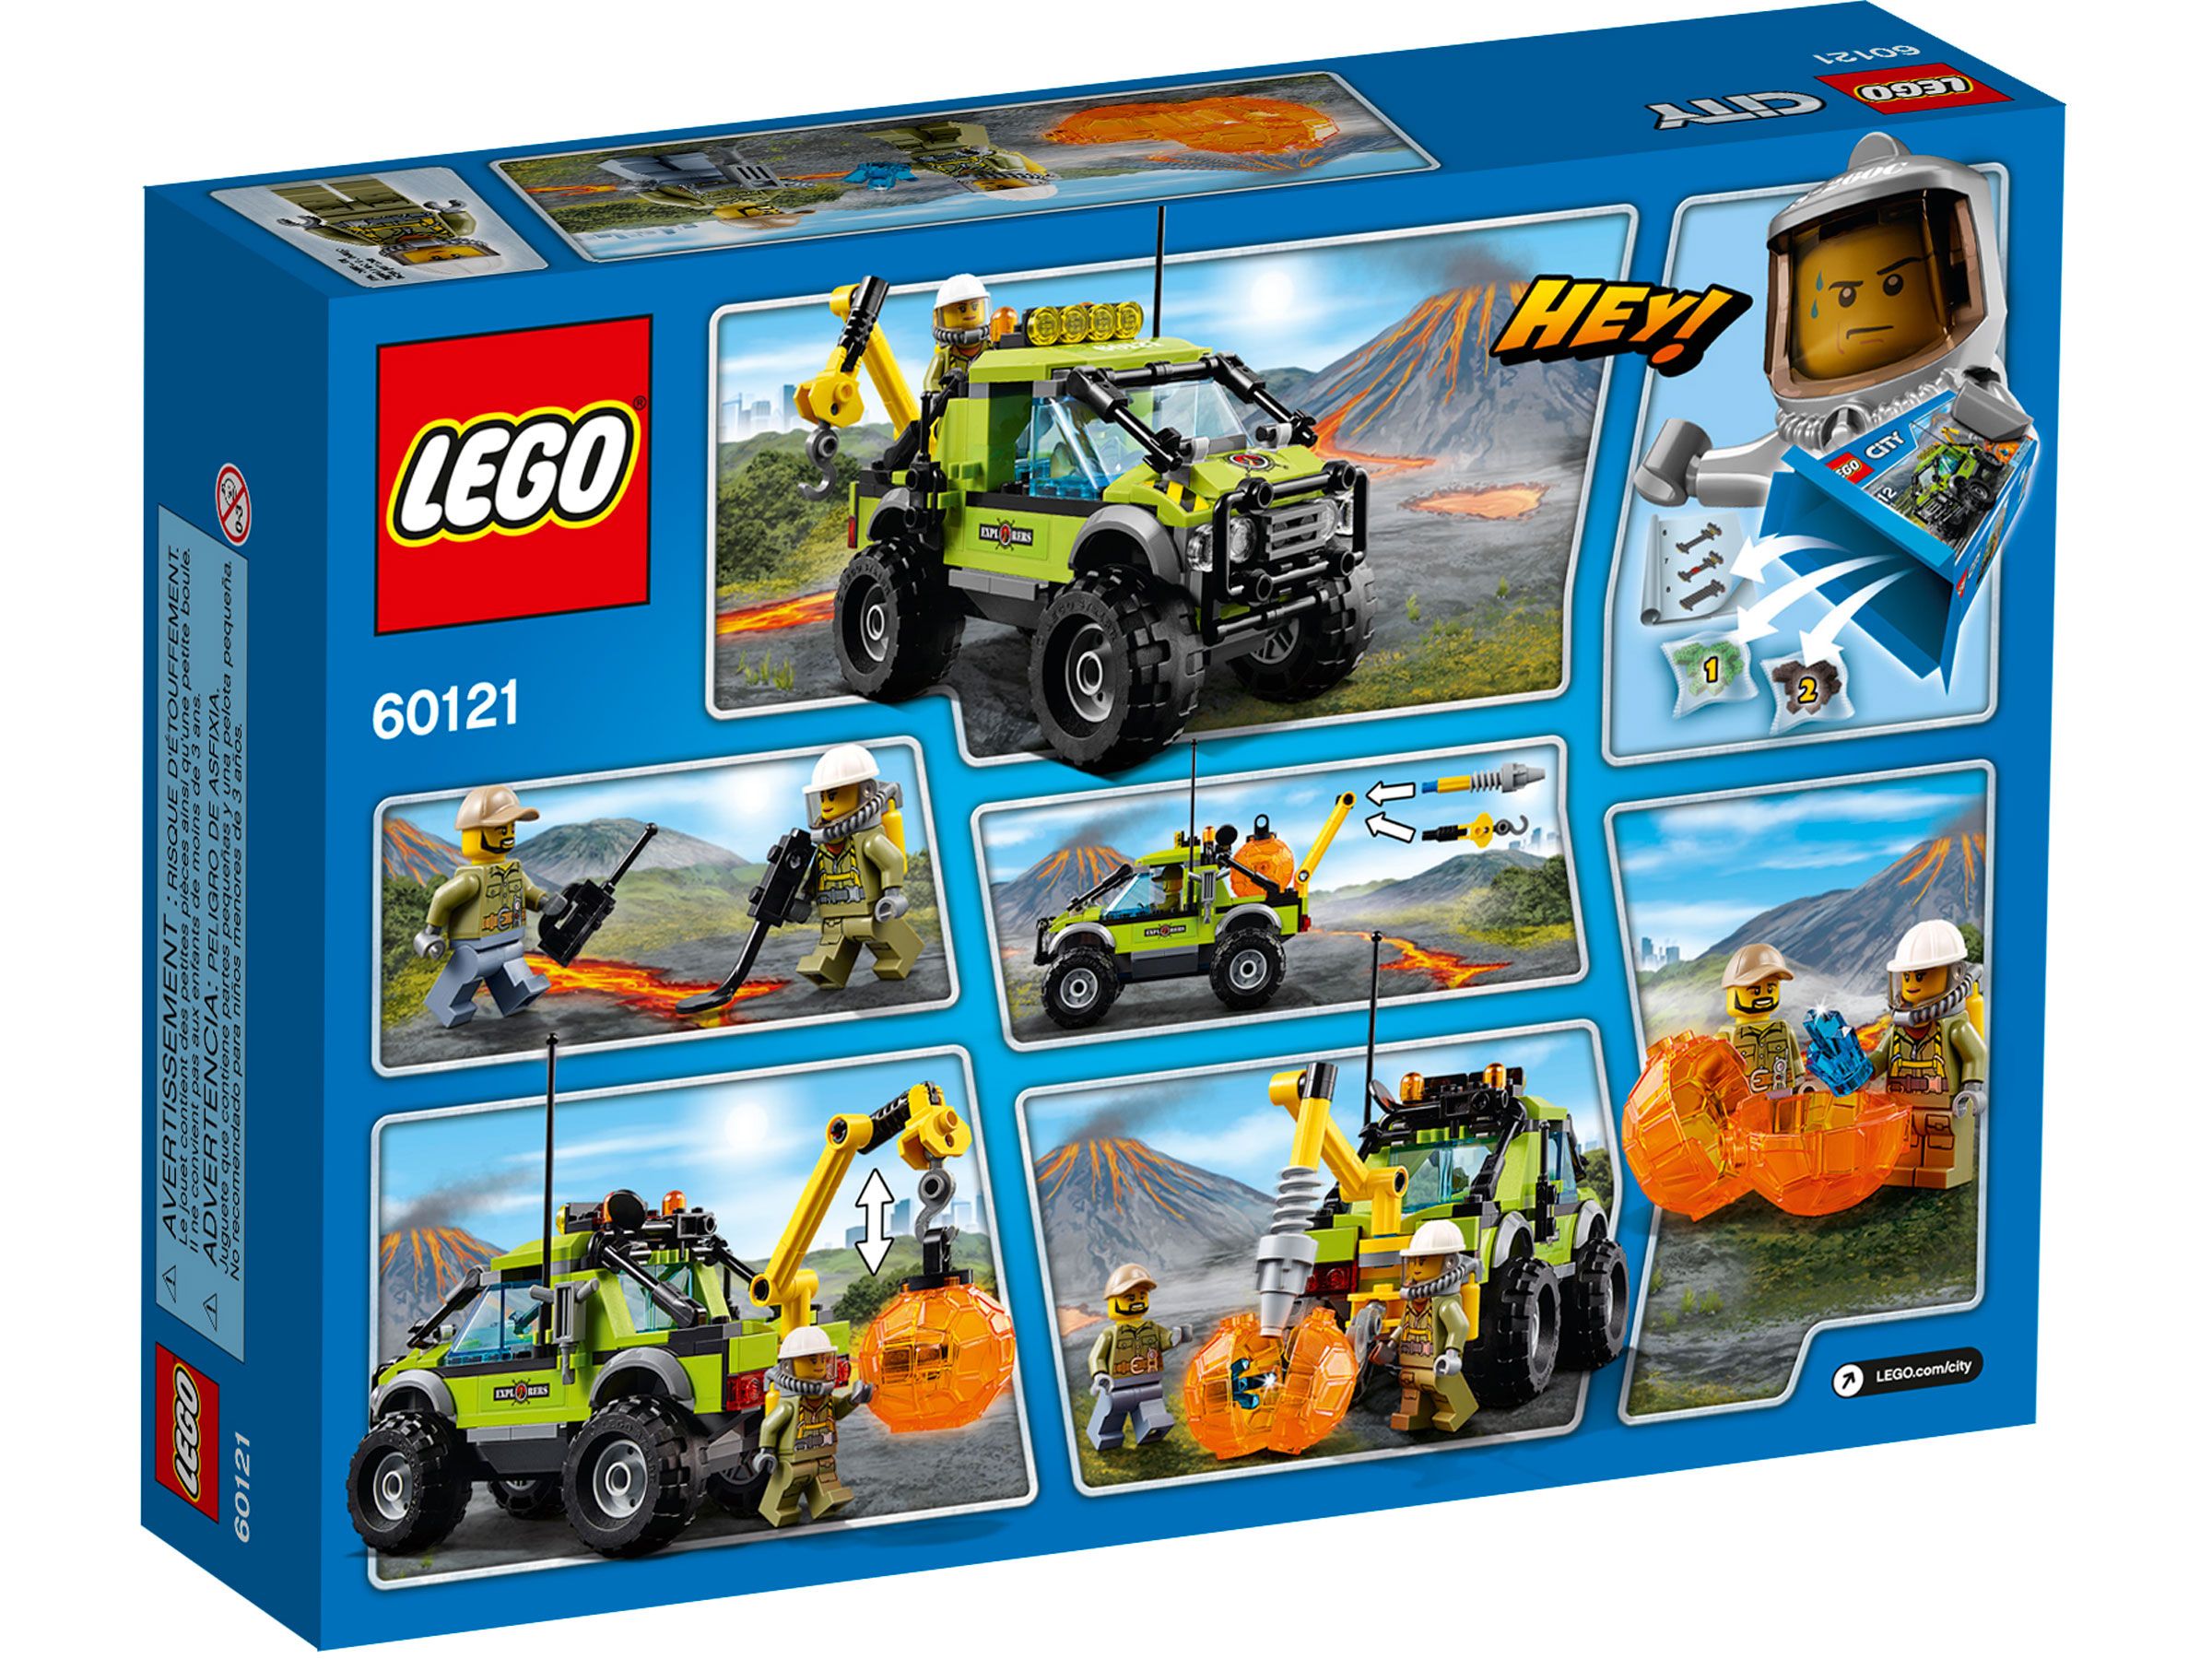 LEGO City 60121 Vulkan-Forschungstruck LEGO_60121_Box5_na.jpg